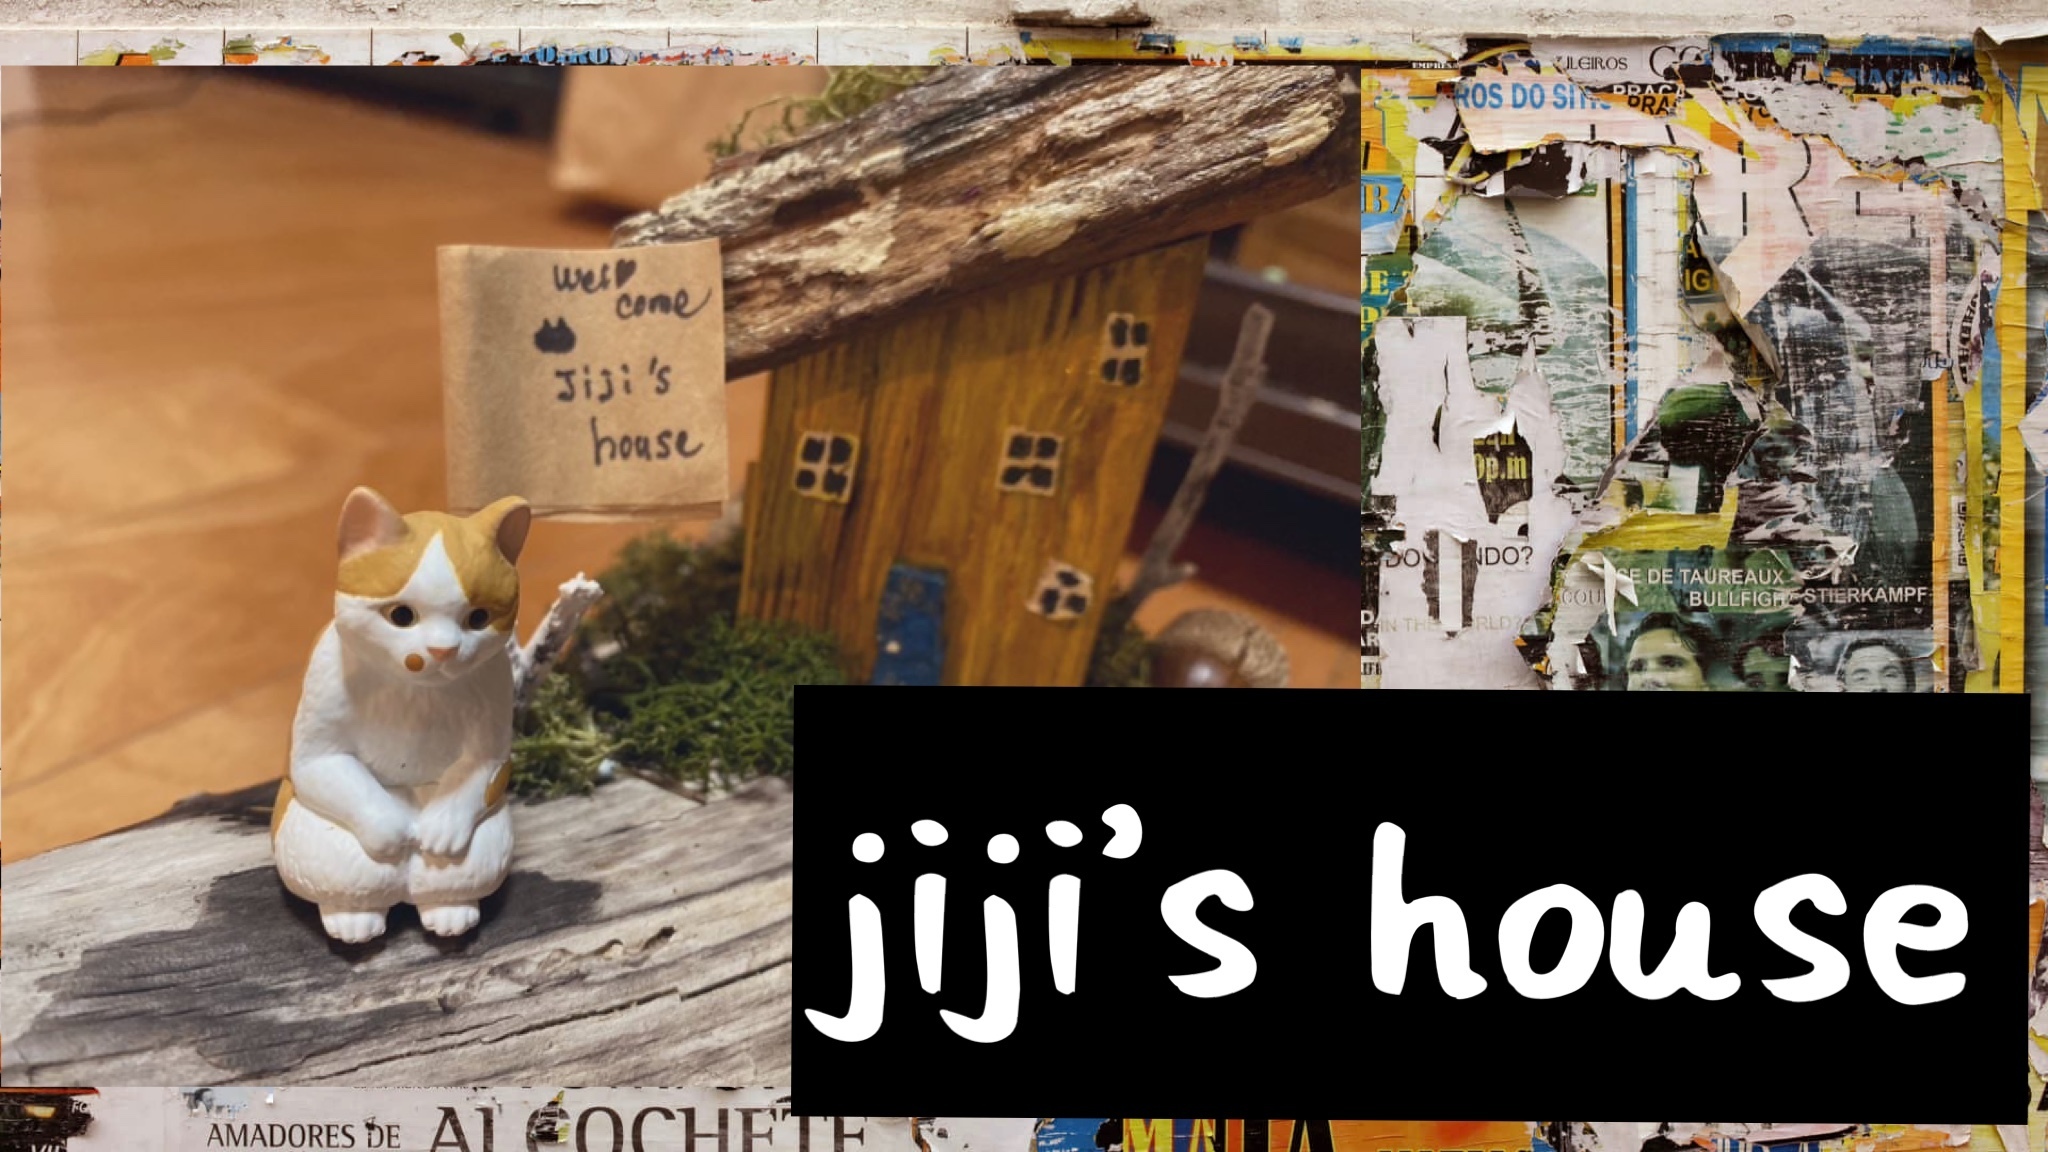 jiji's house